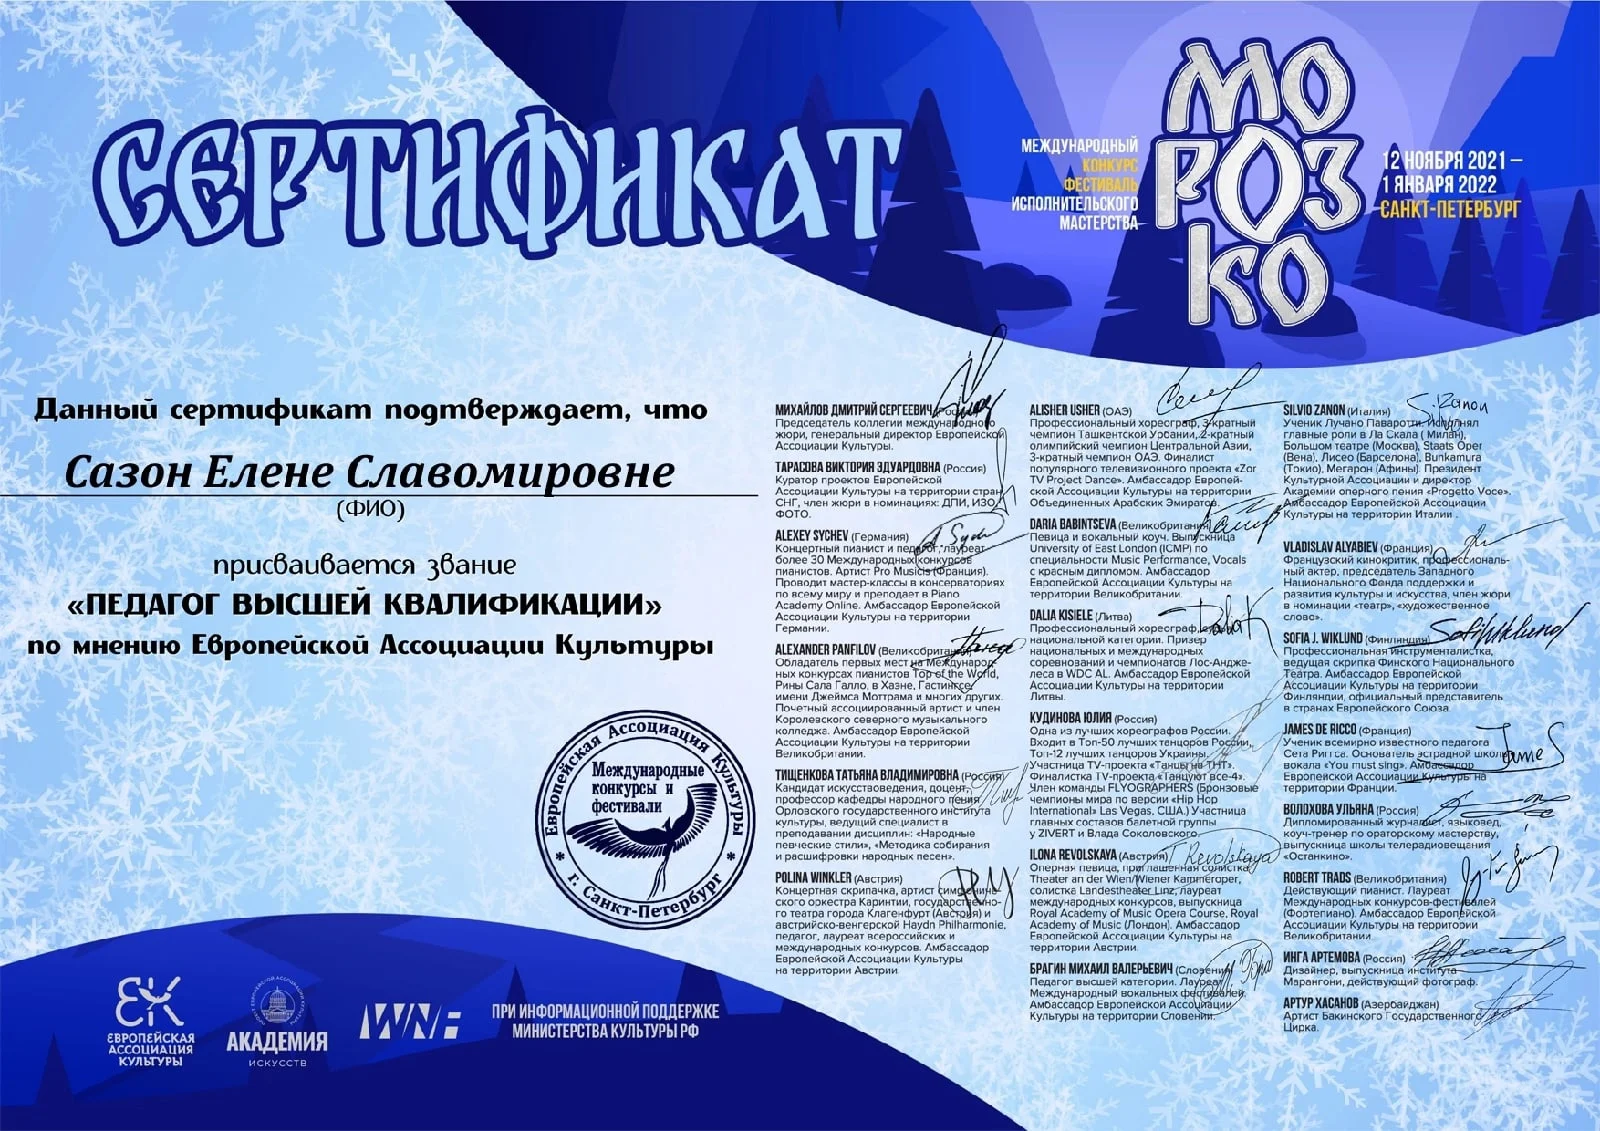 Международный конкурс-фестиваль исполнительного мастерства «Морозко»